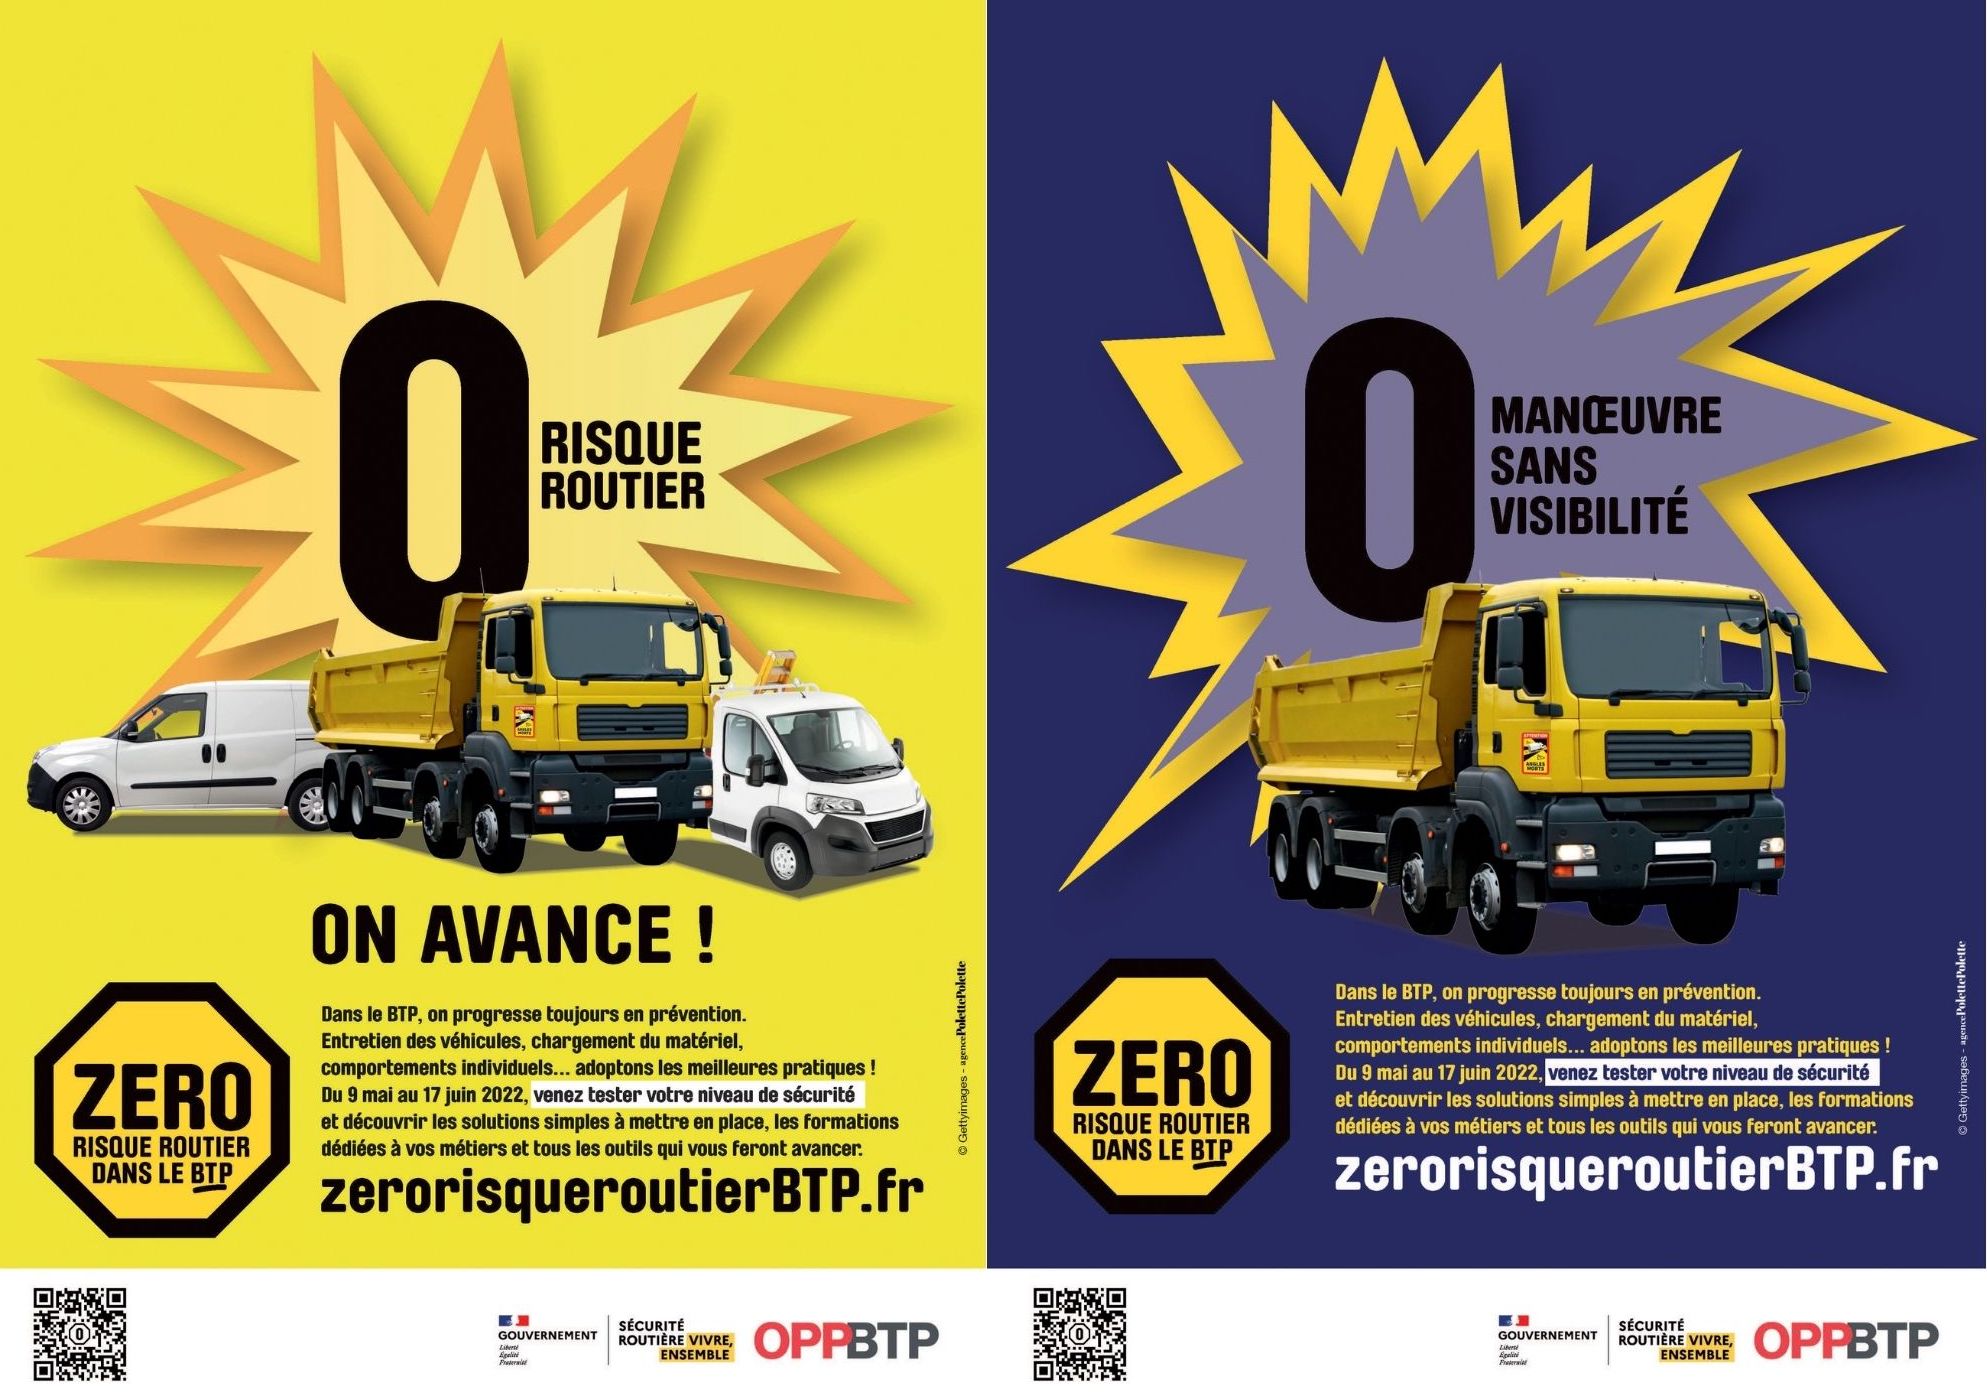 Une campagne pour sensibiliser au risque routier dans le BTP